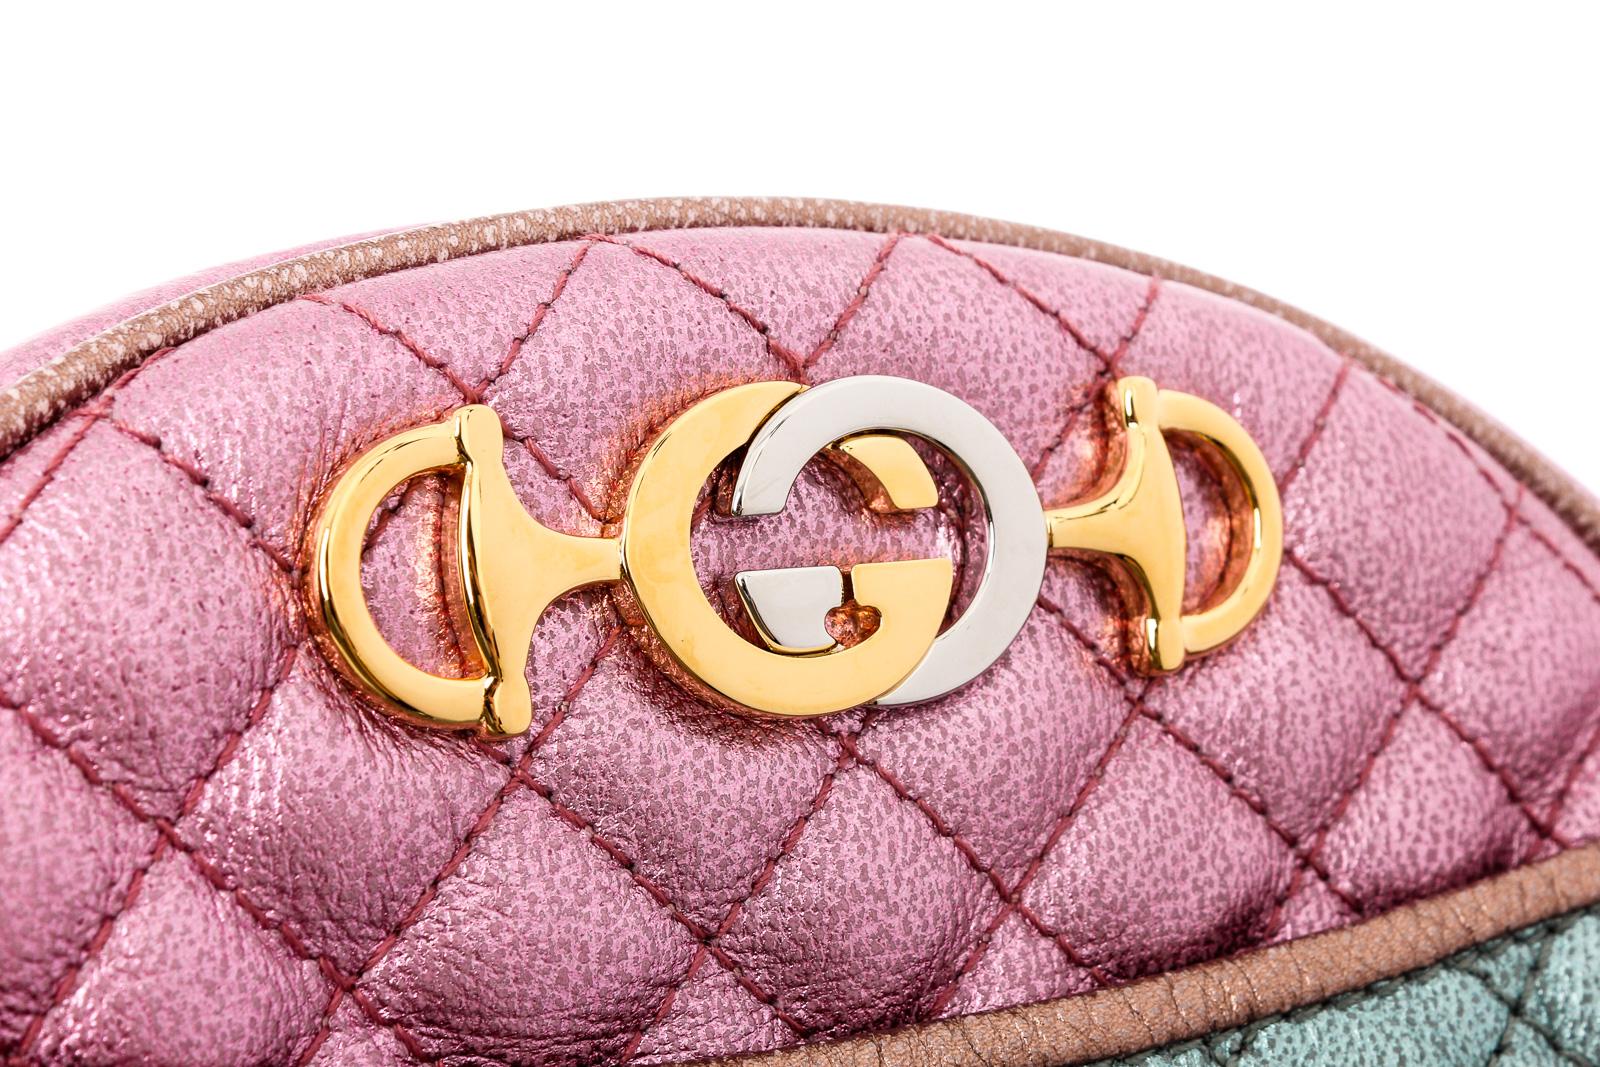 metallic pink purse